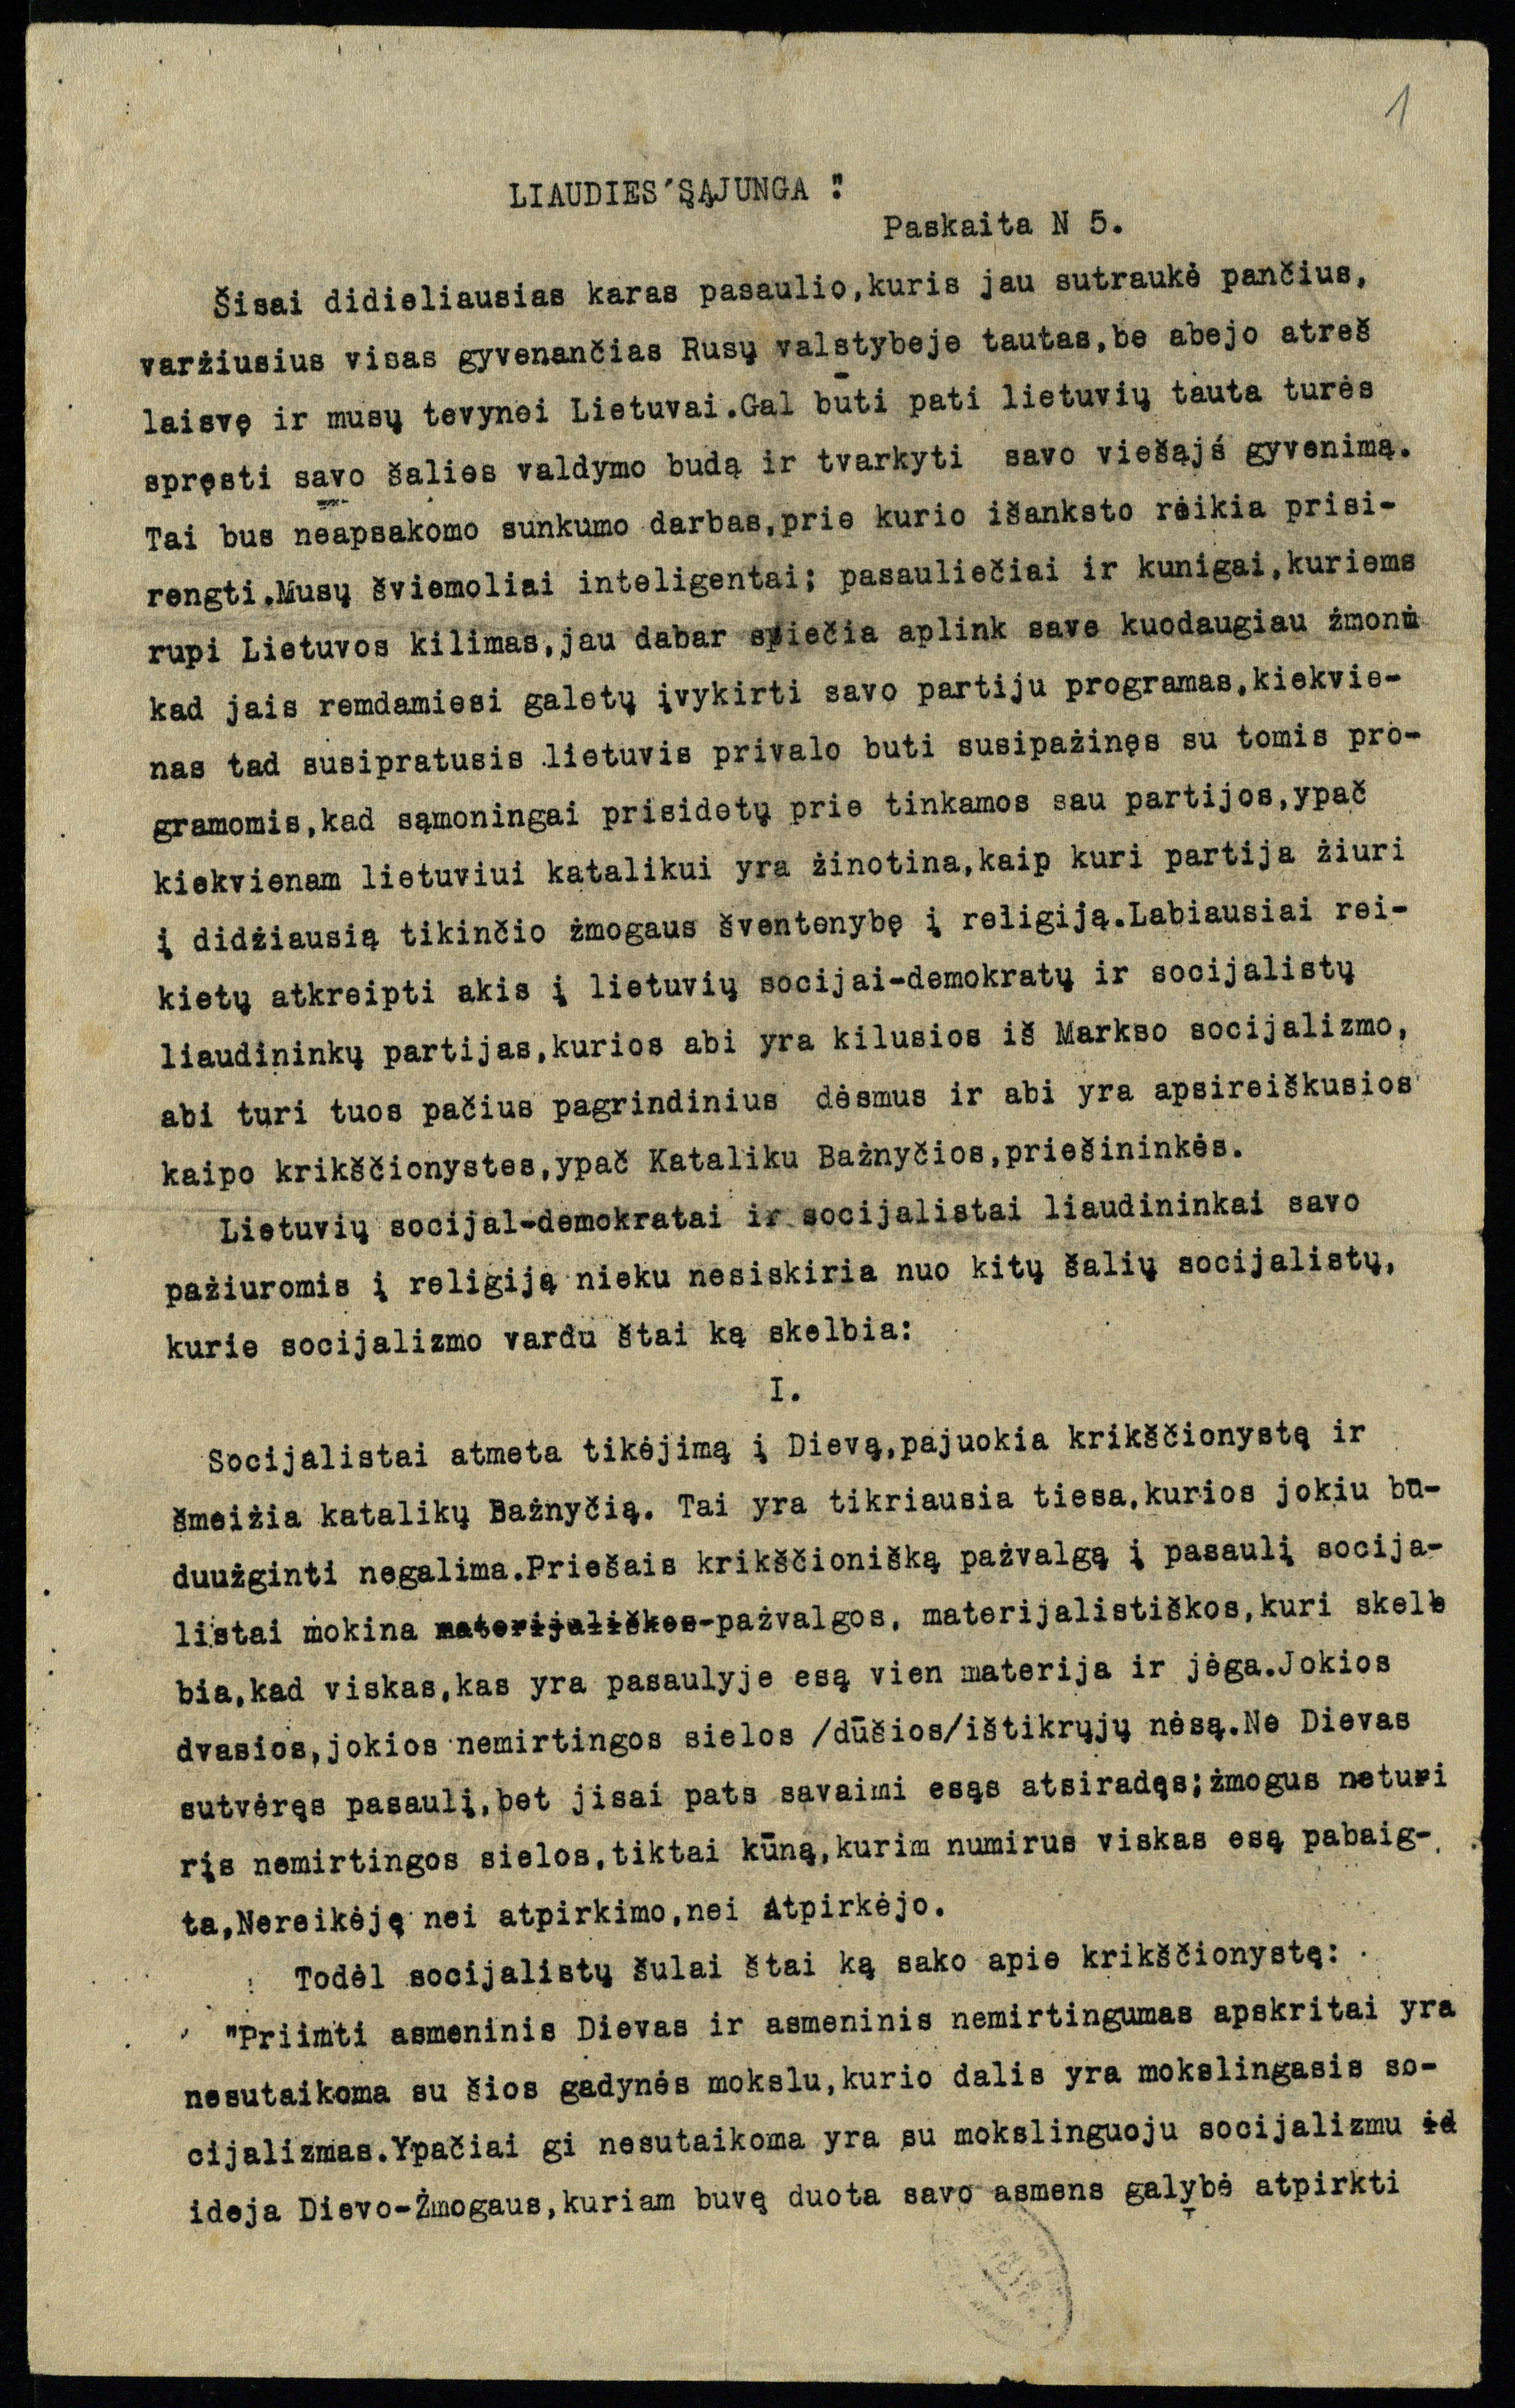 Liaudies sąjungos 5-oji paskaita, kurioje polemizuojama su socialistais. LMAVB RS, F237-69, lap. 1r.